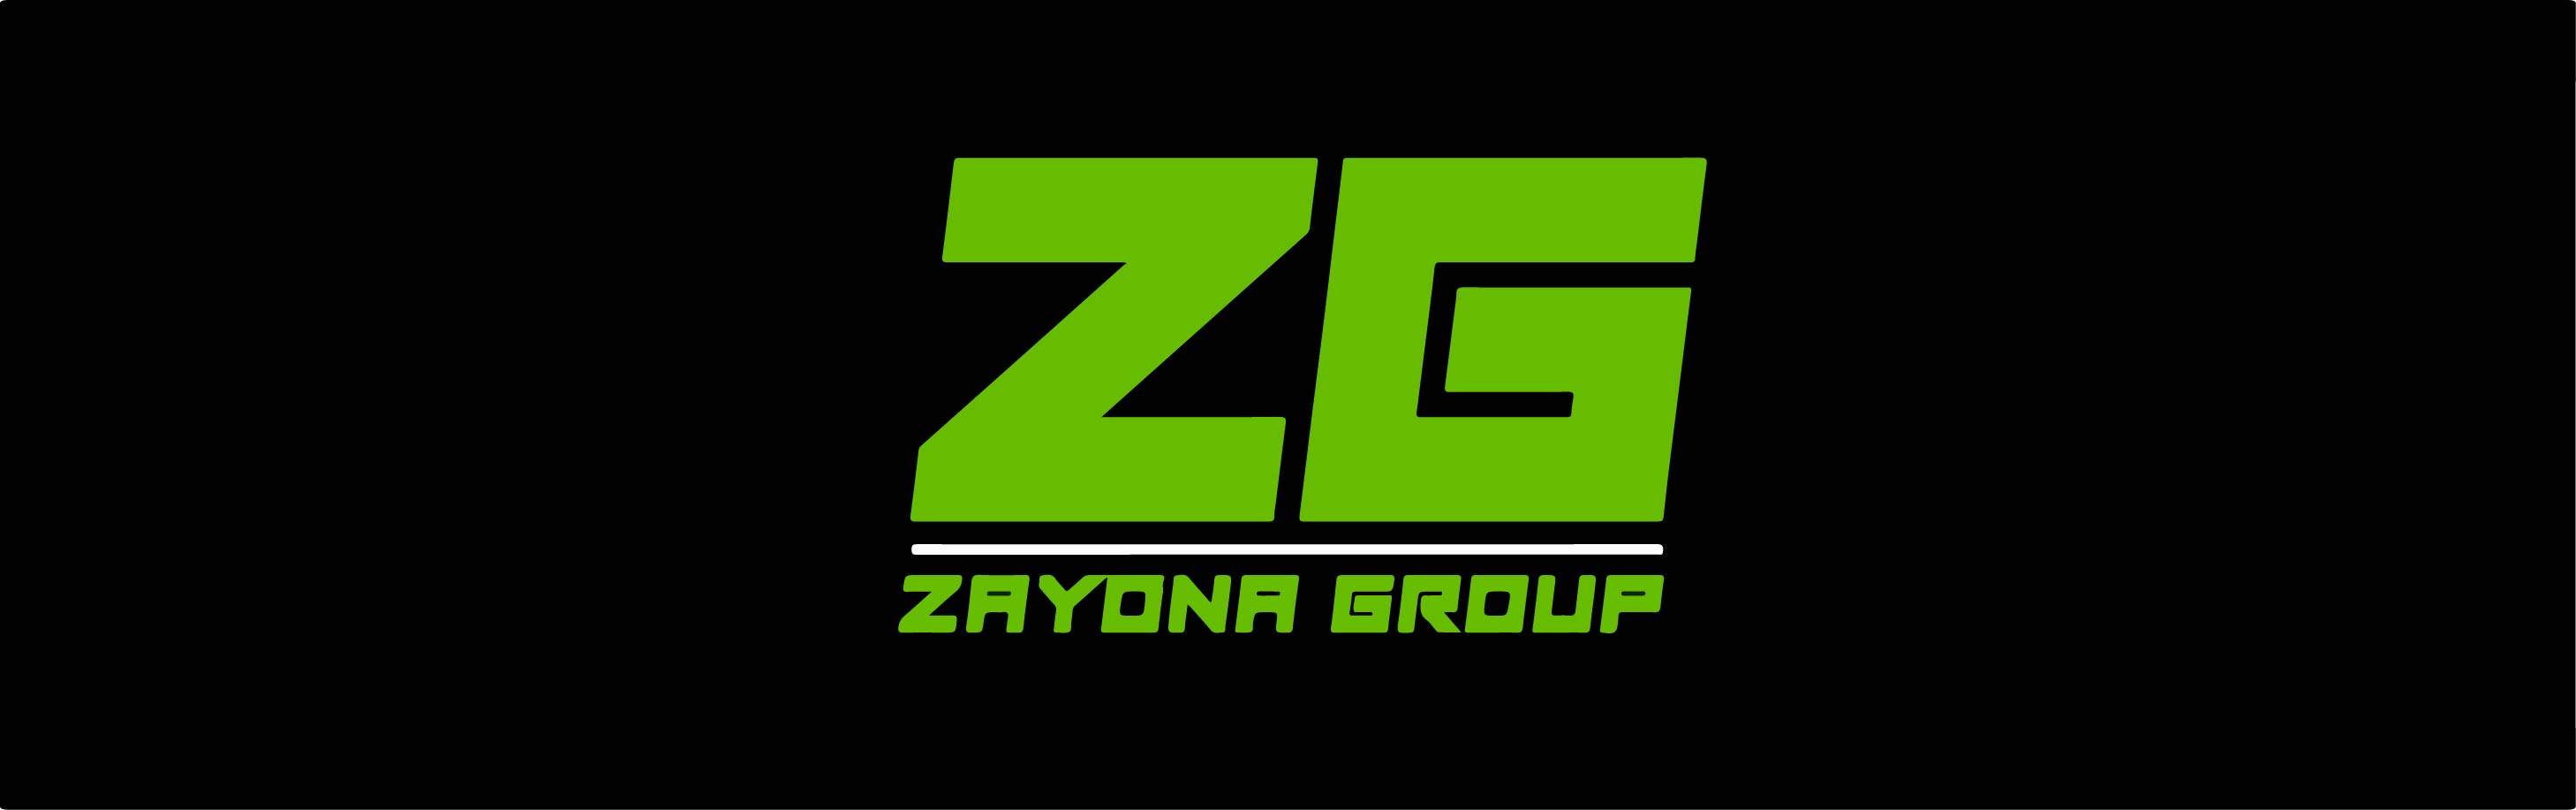 Zayouna Group